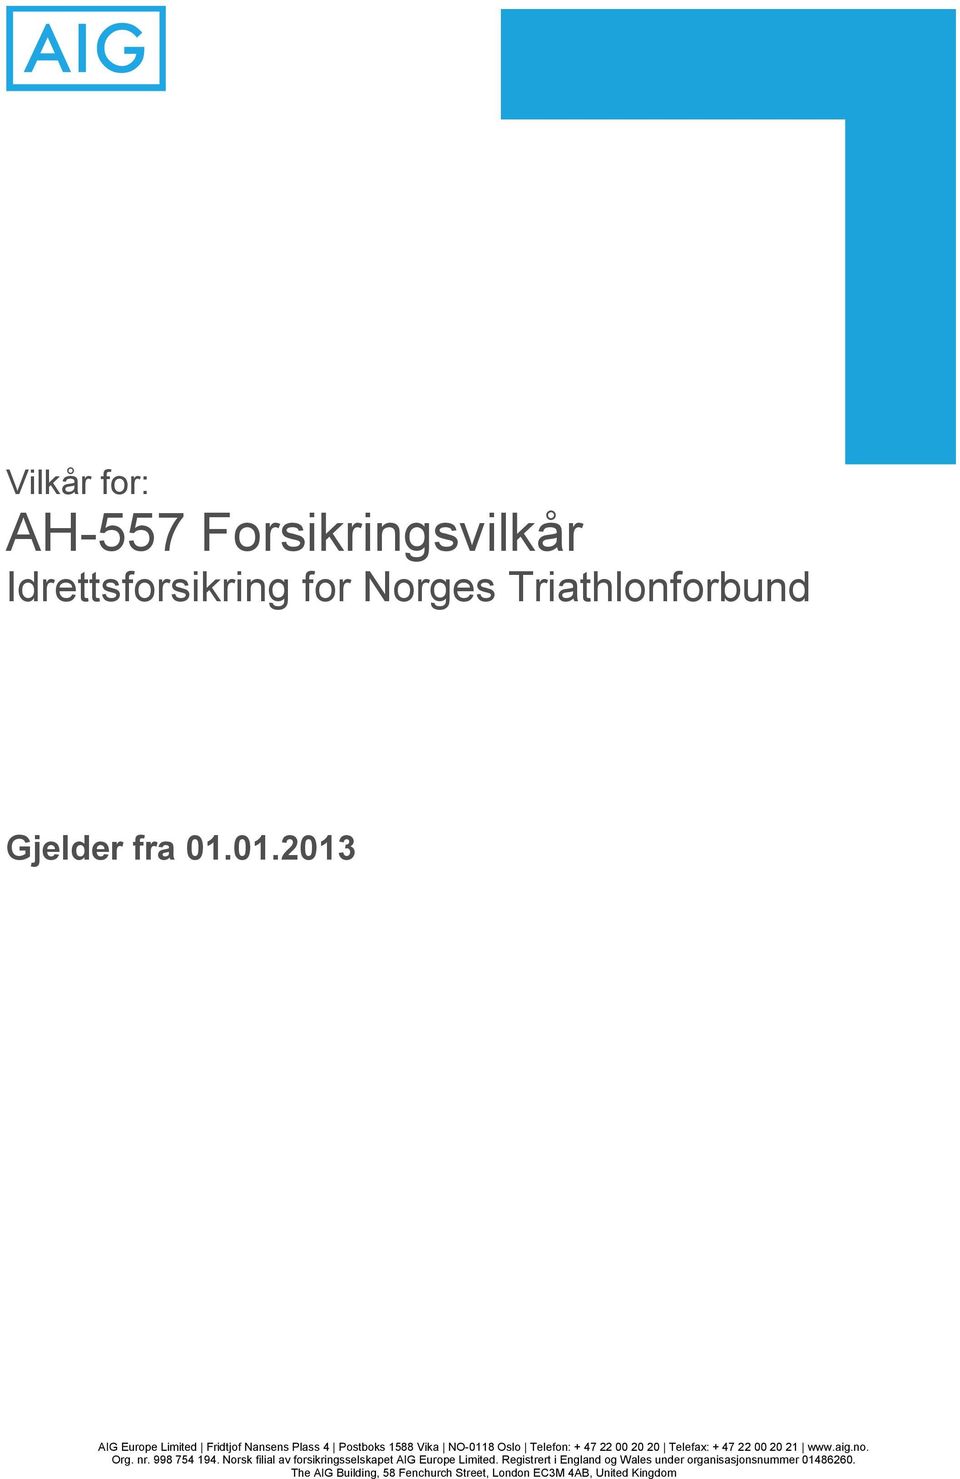 Telefax: + 47 22 00 20 21 www.aig.no. Org. nr. 998 754 194. Norsk filial av forsikringsselskapet AIG Europe Limited.